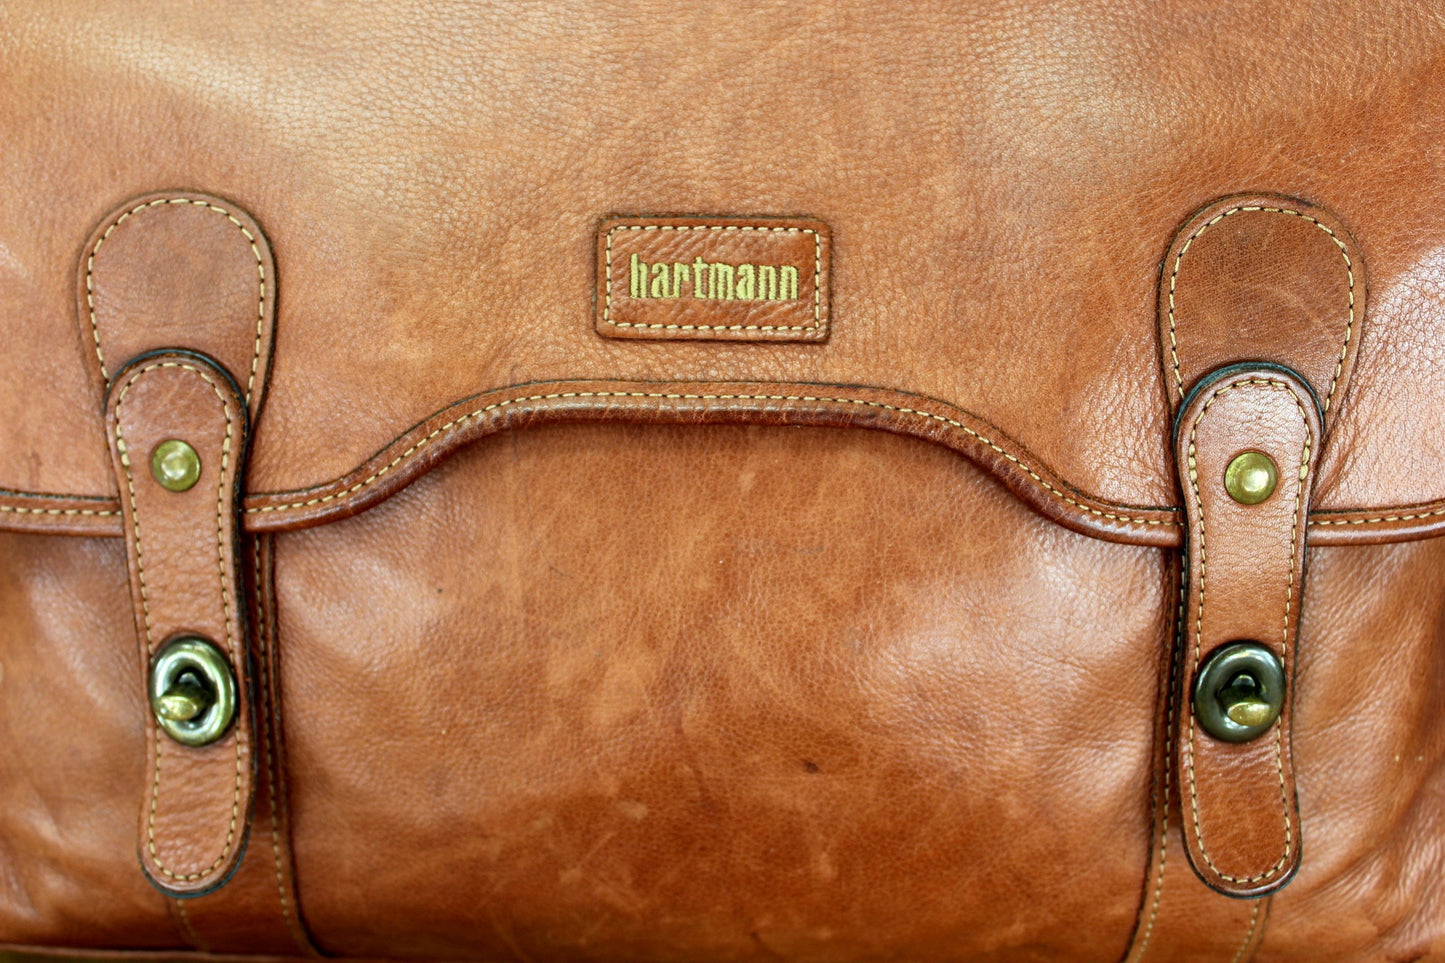 Hartmann Belting Leather Briefcase Messenger Laptop - Rare Fold Over Front Vintage highest quality